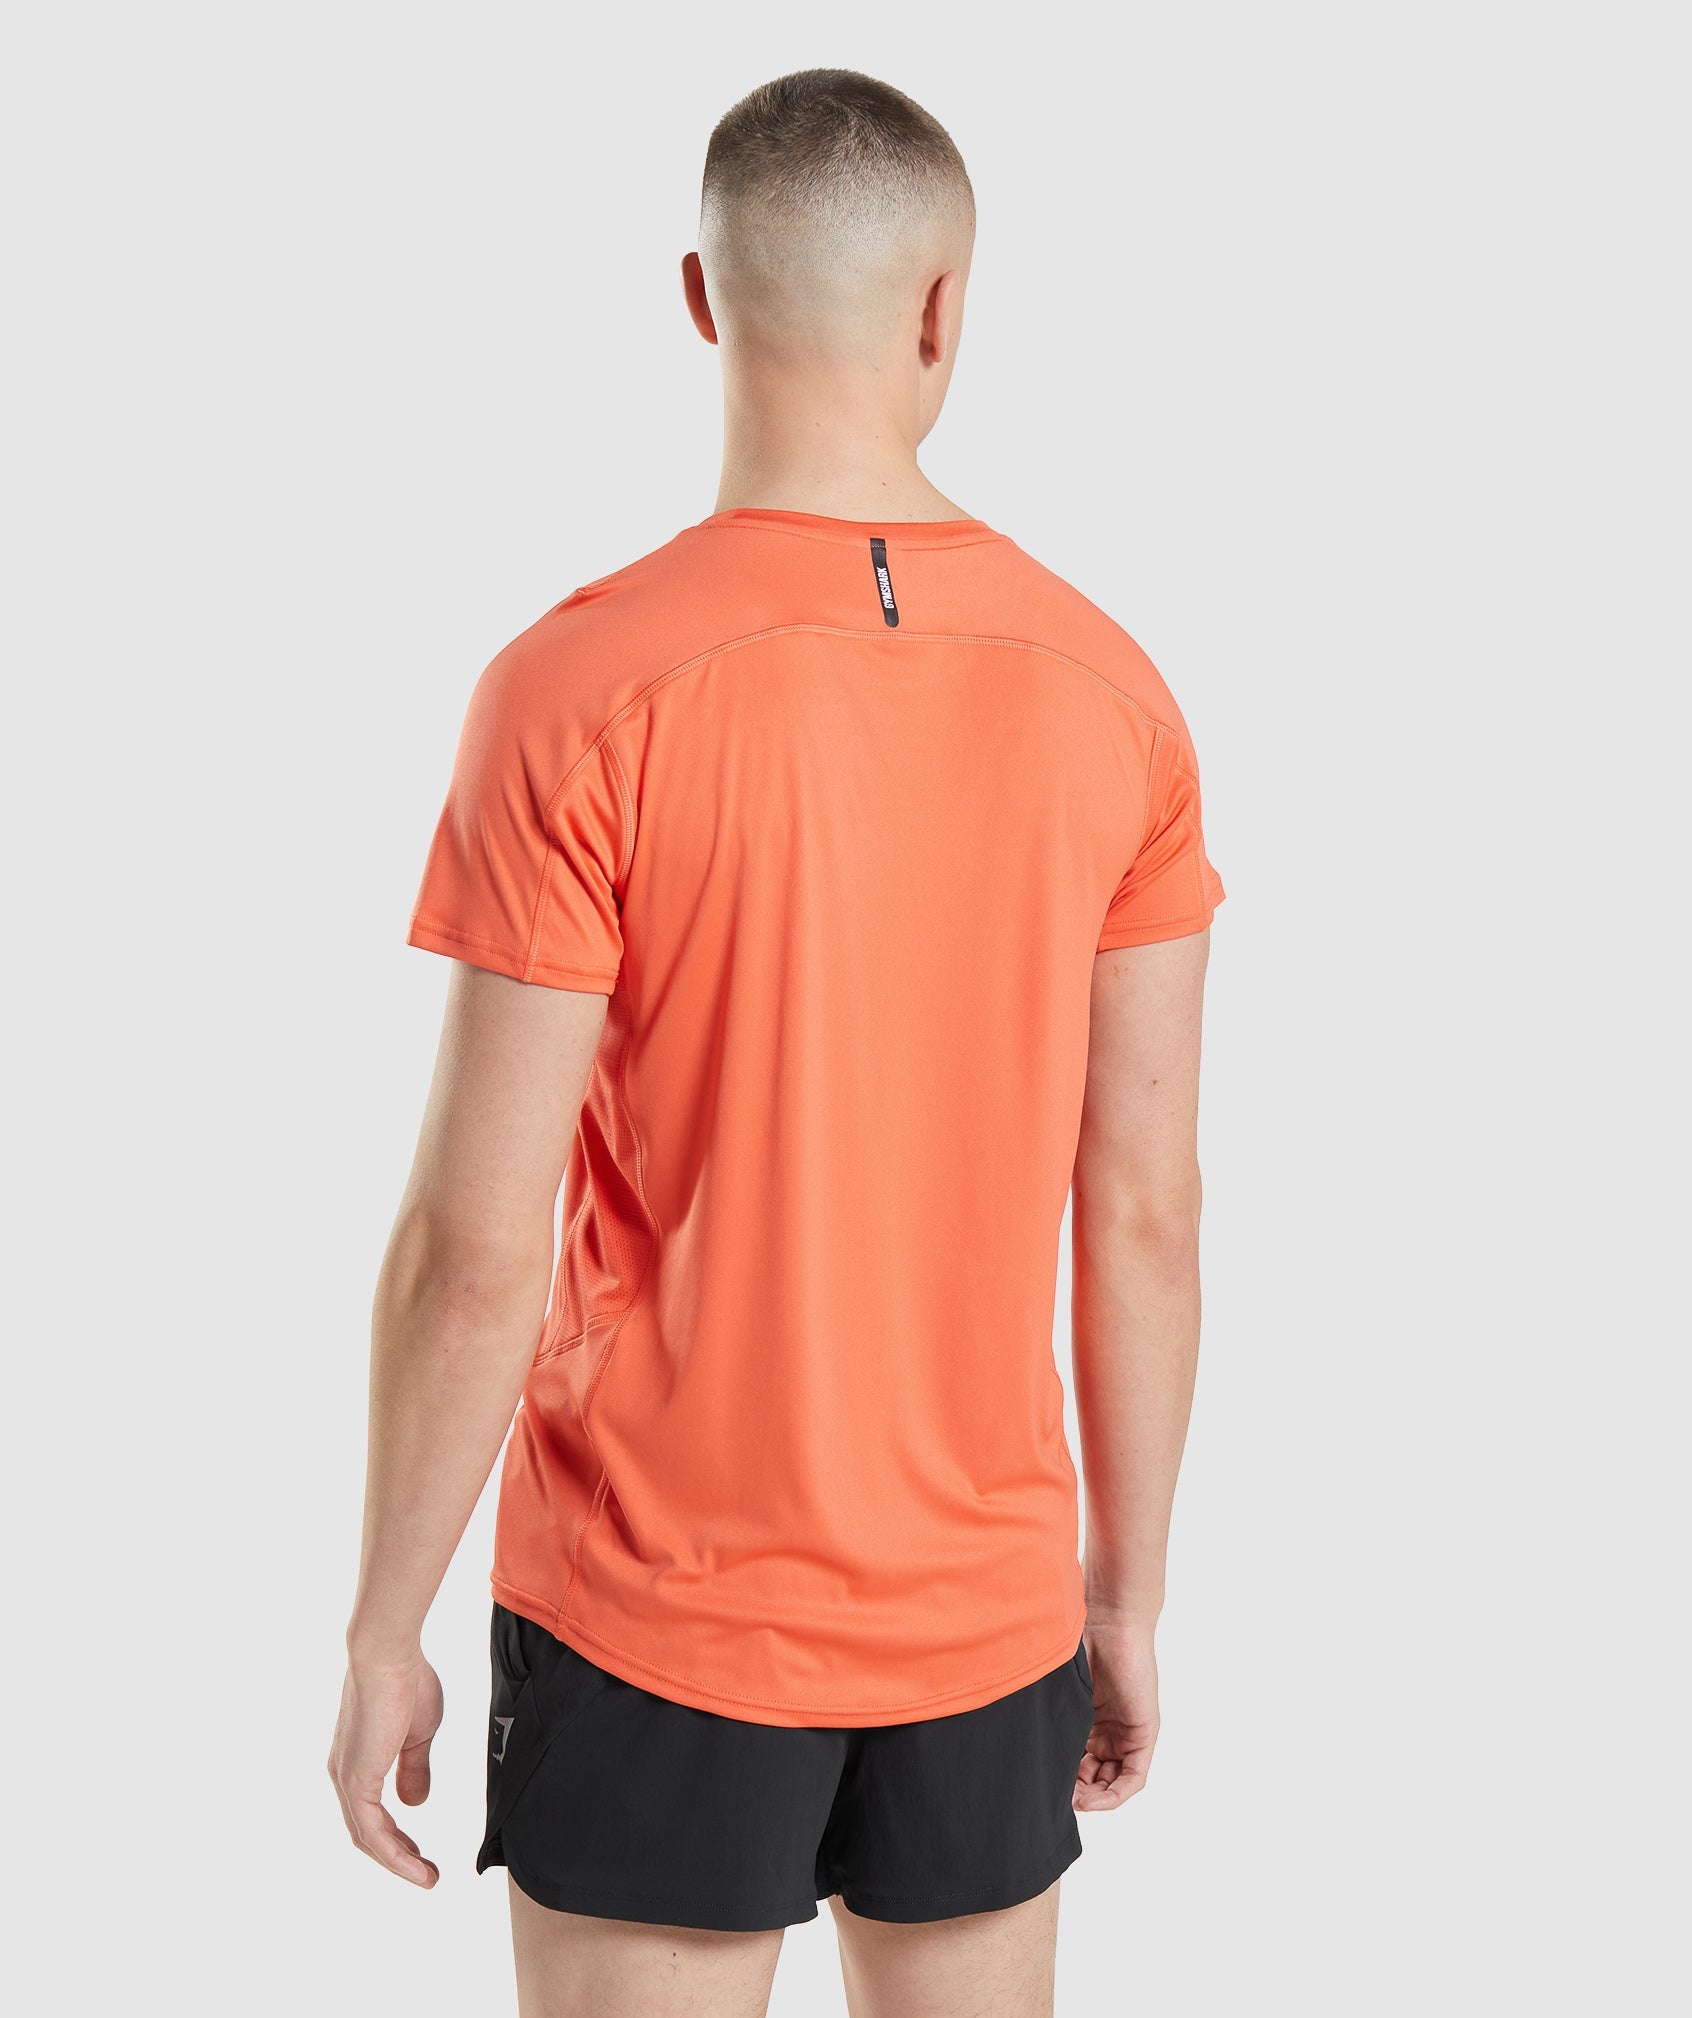 Speed Evolve T-Shirt in Papaya Orange - view 2